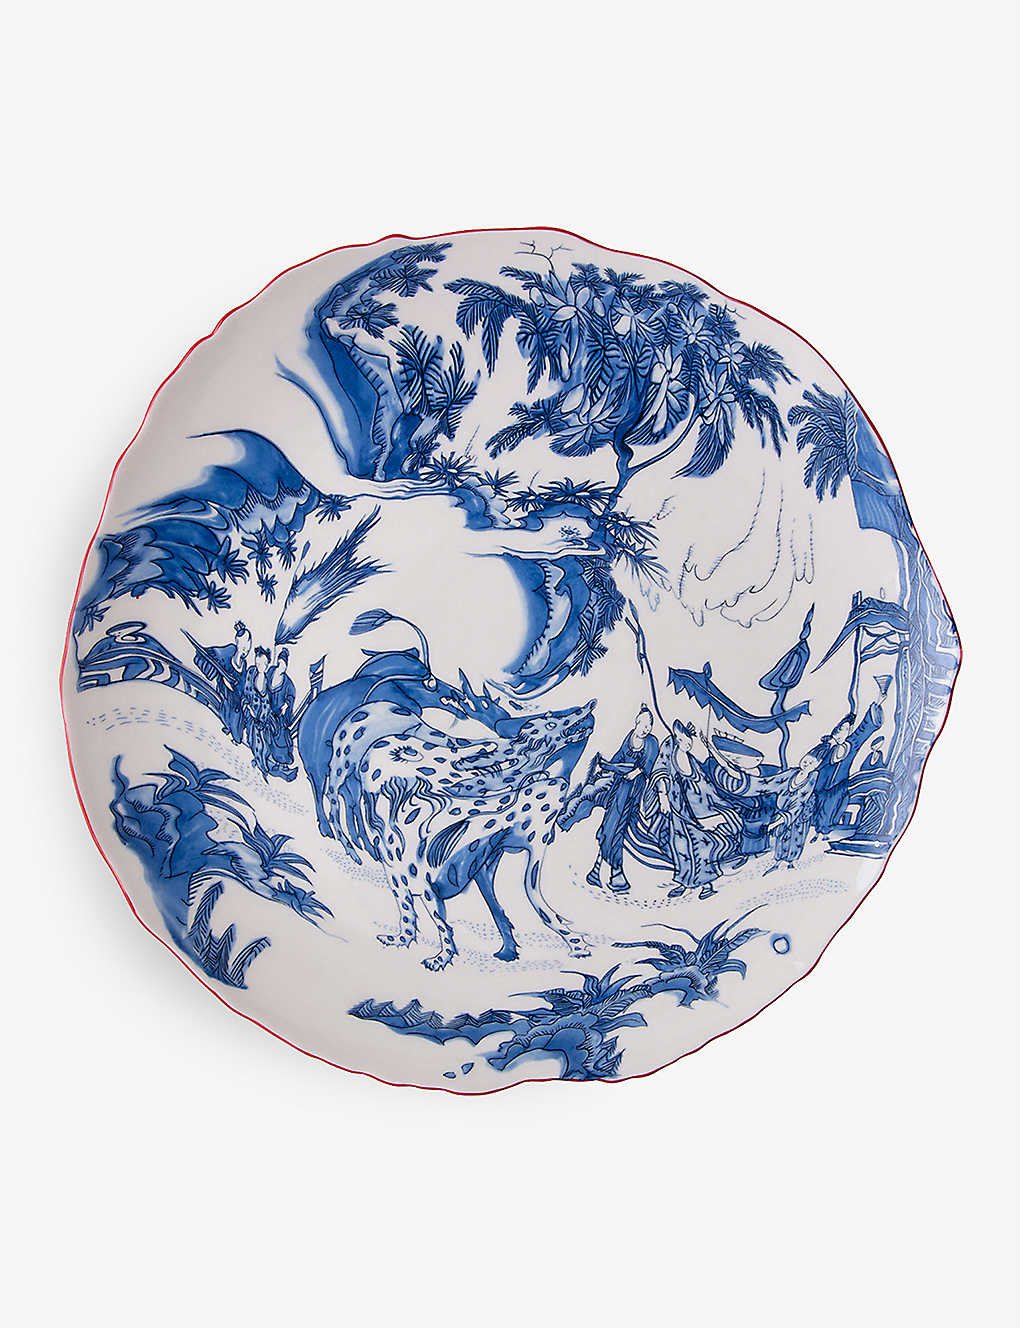 Seletti X Diesel Living Classics On Acid Blue Chinoiserie Porcelain Dinner Plate 28cm